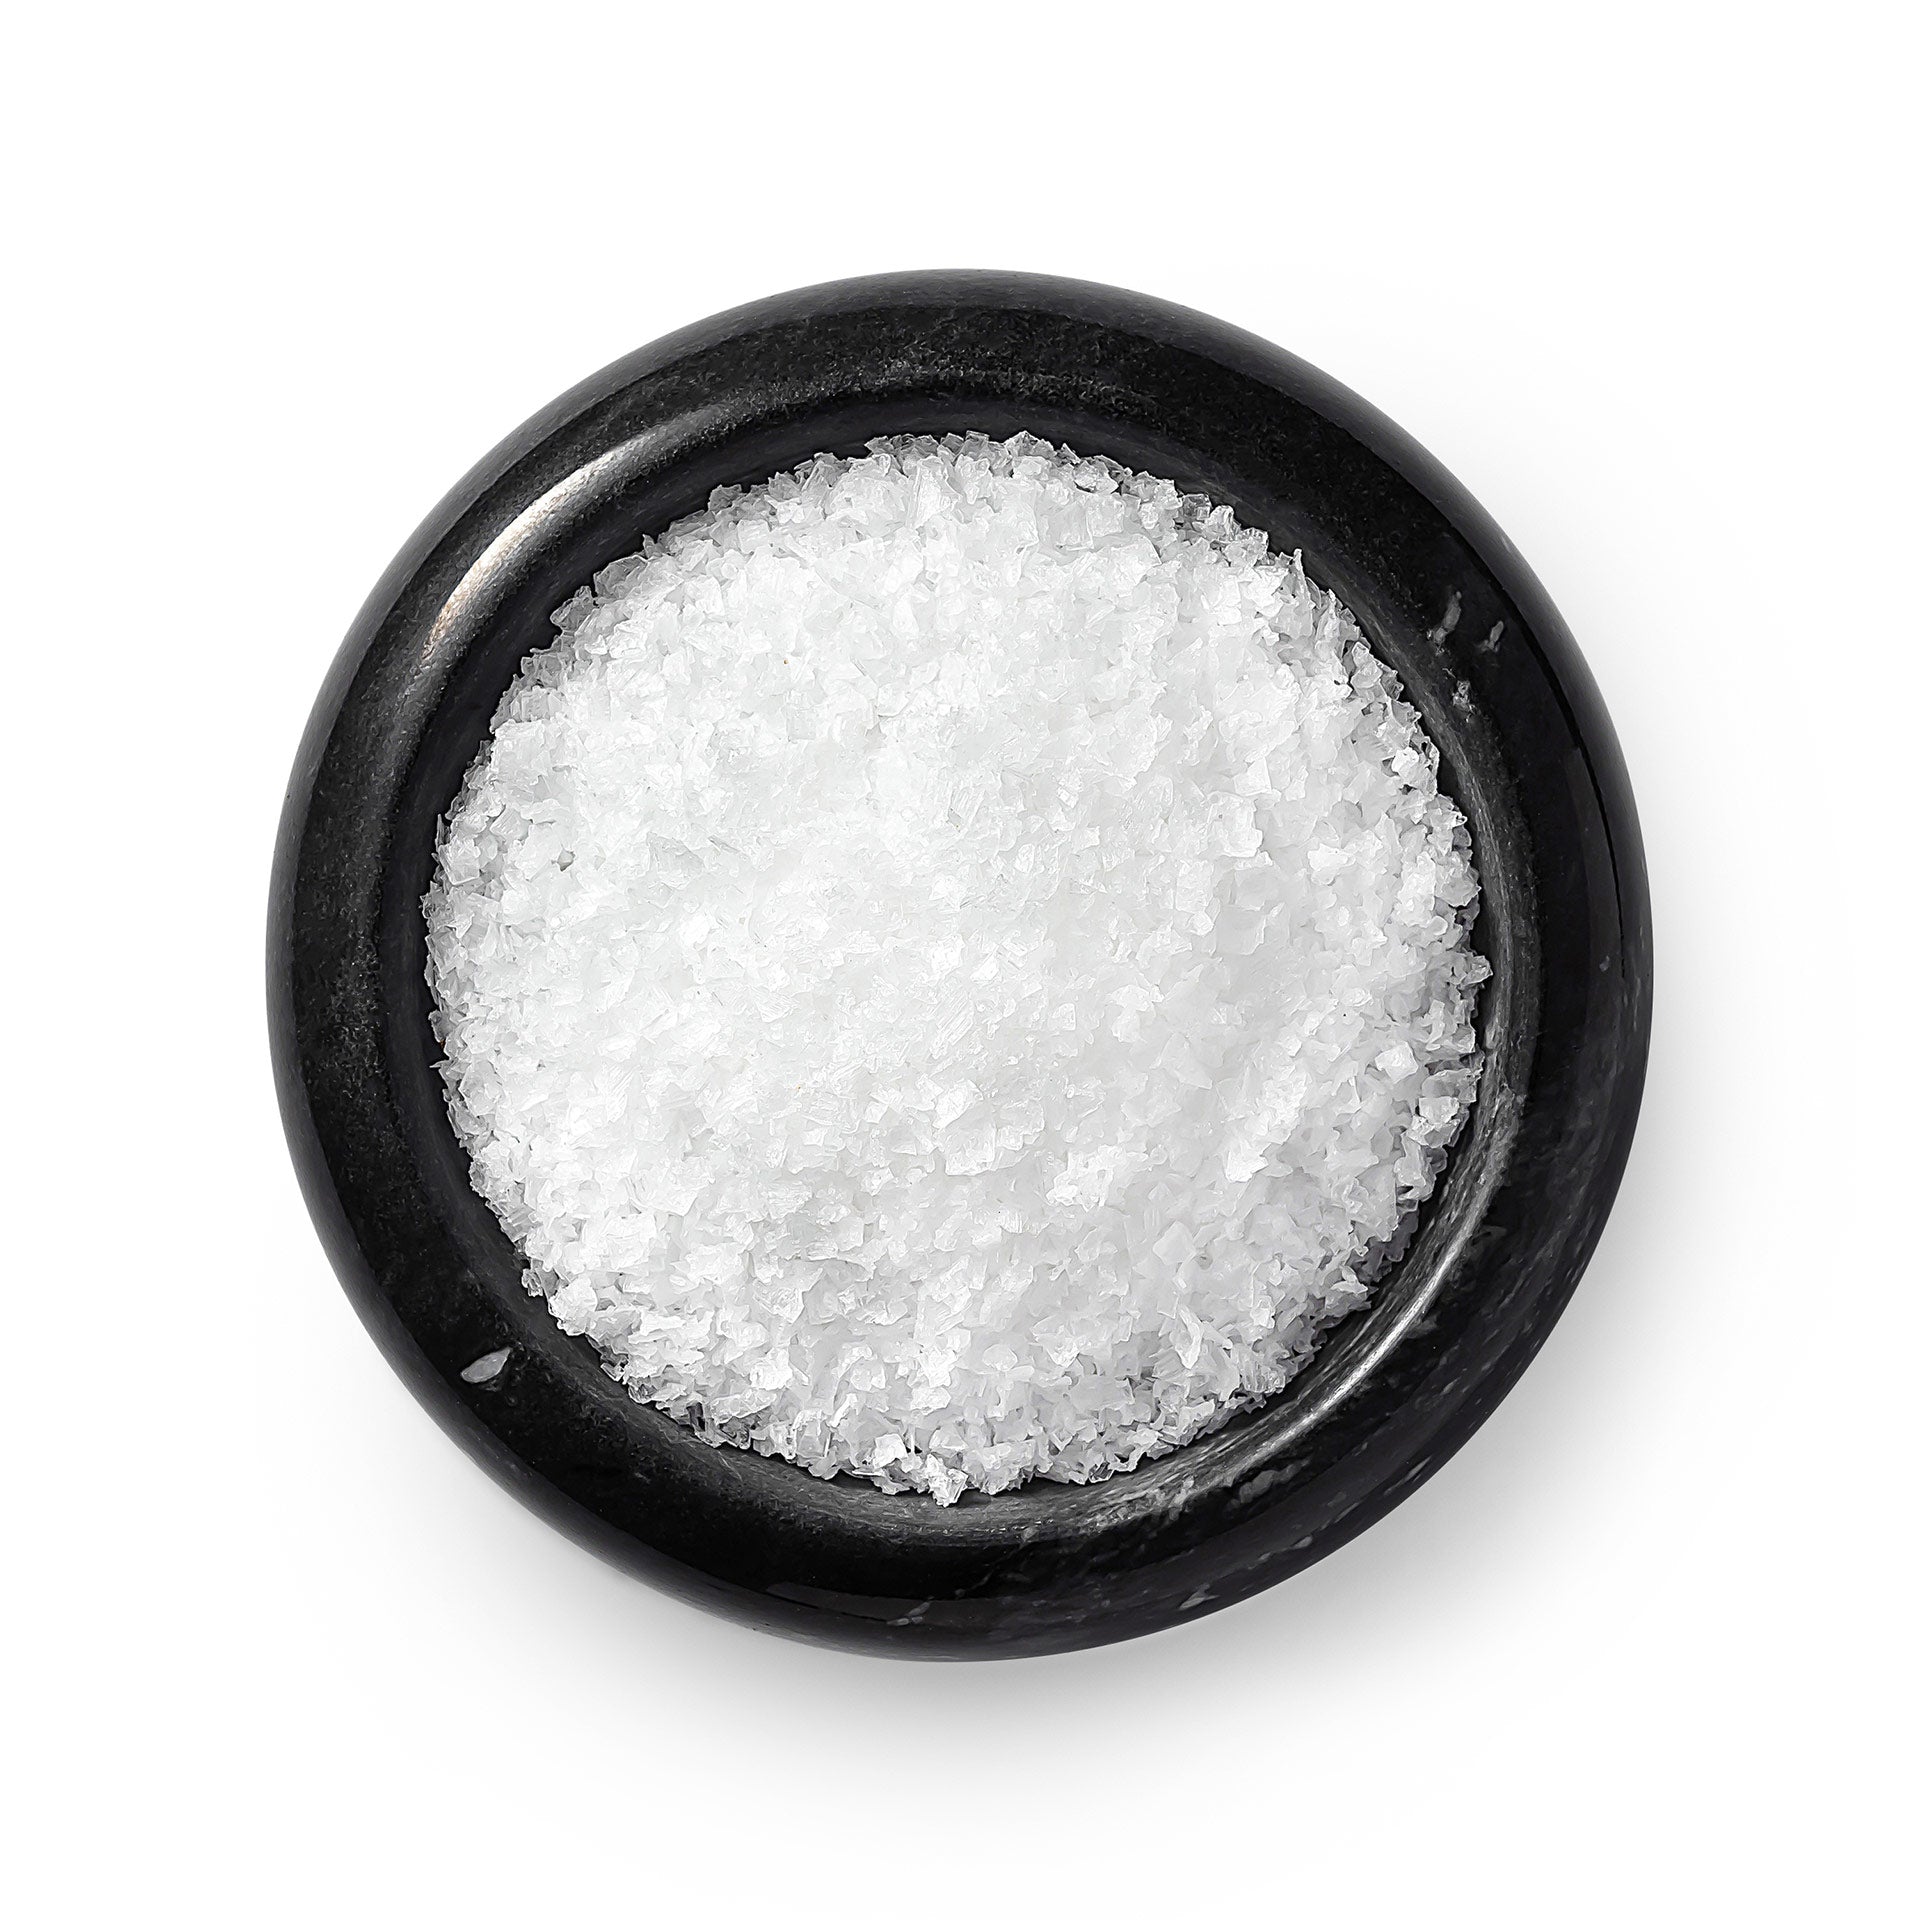 Flakey White Sea Salt